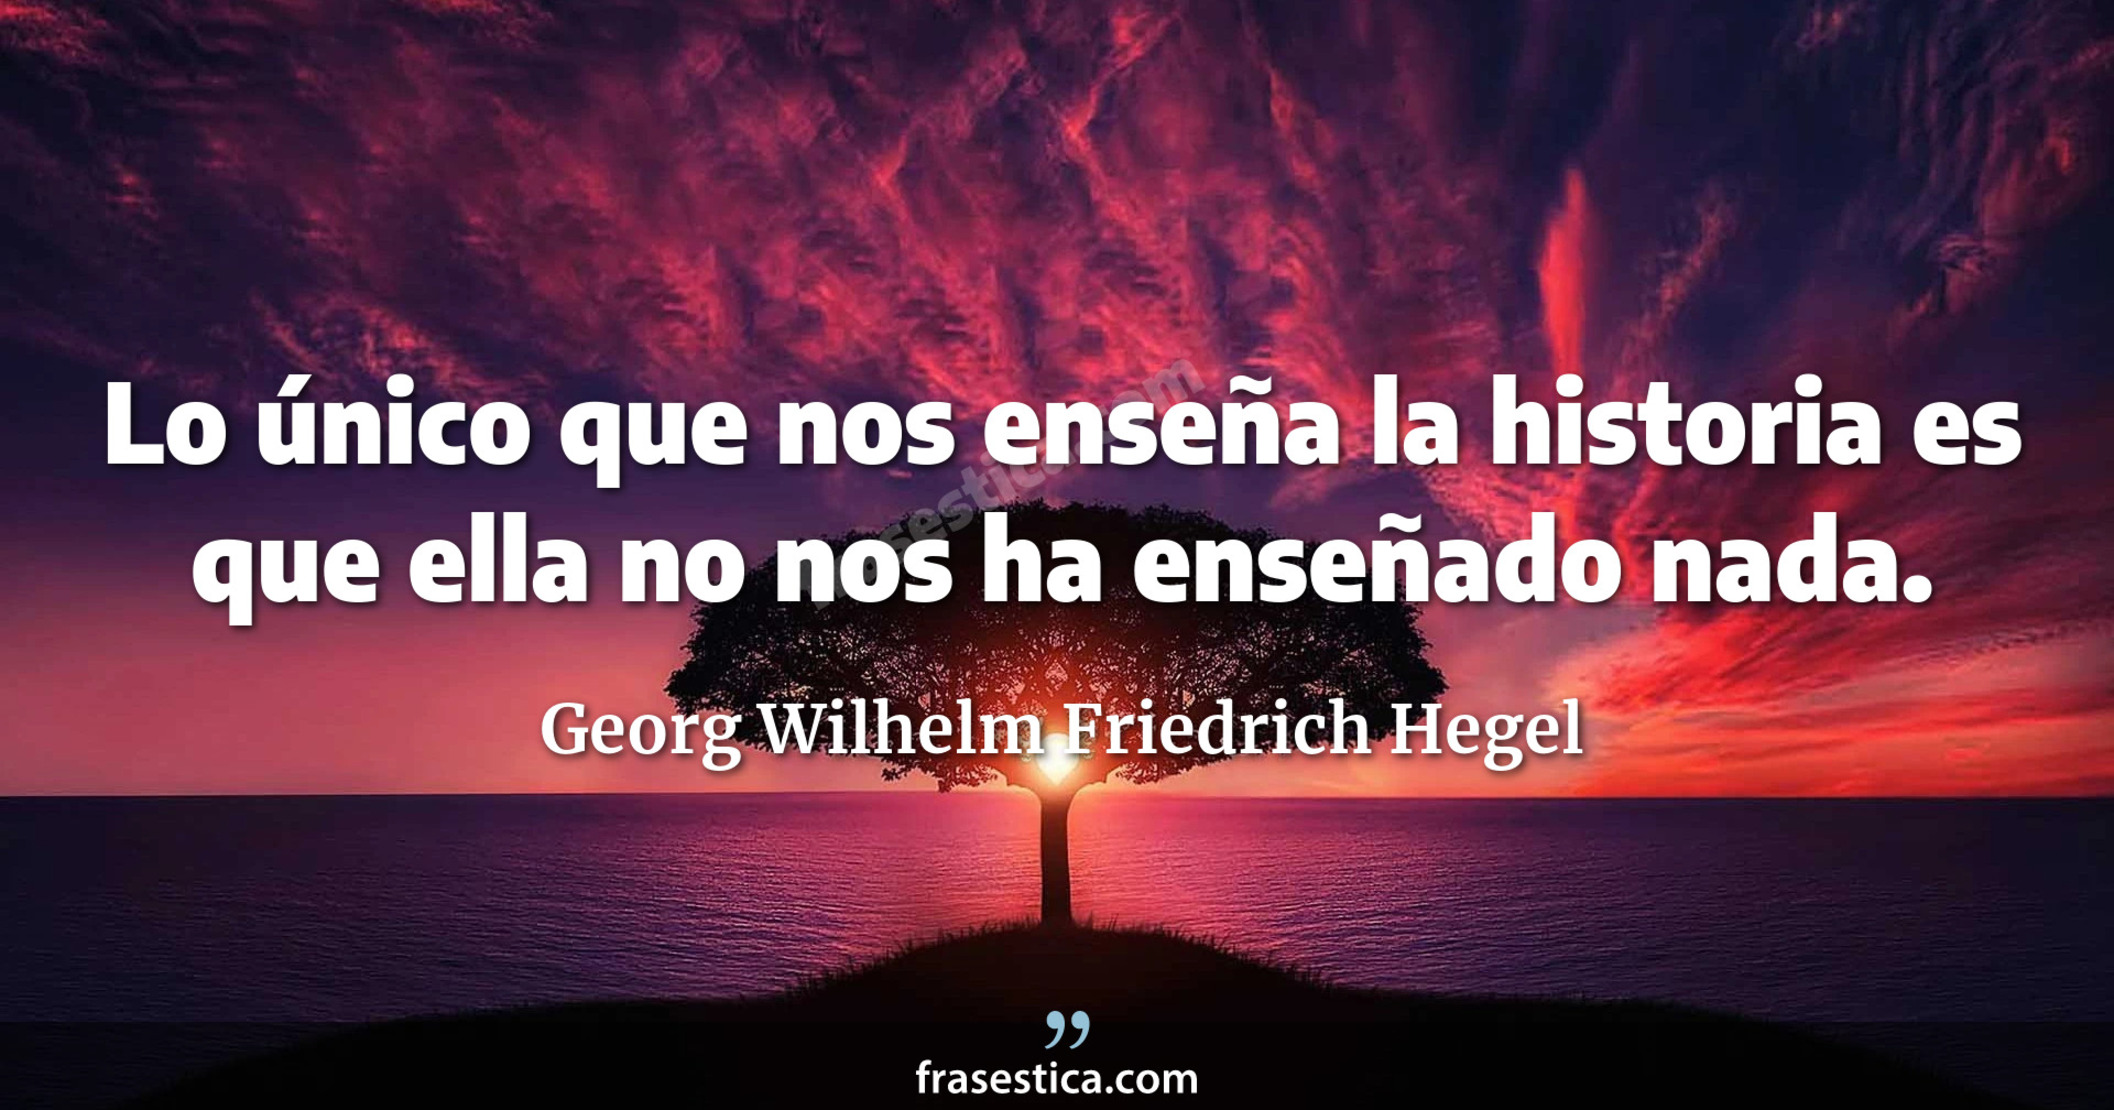 Lo único que nos enseña la historia es que ella no nos ha enseñado nada. - Georg Wilhelm Friedrich Hegel